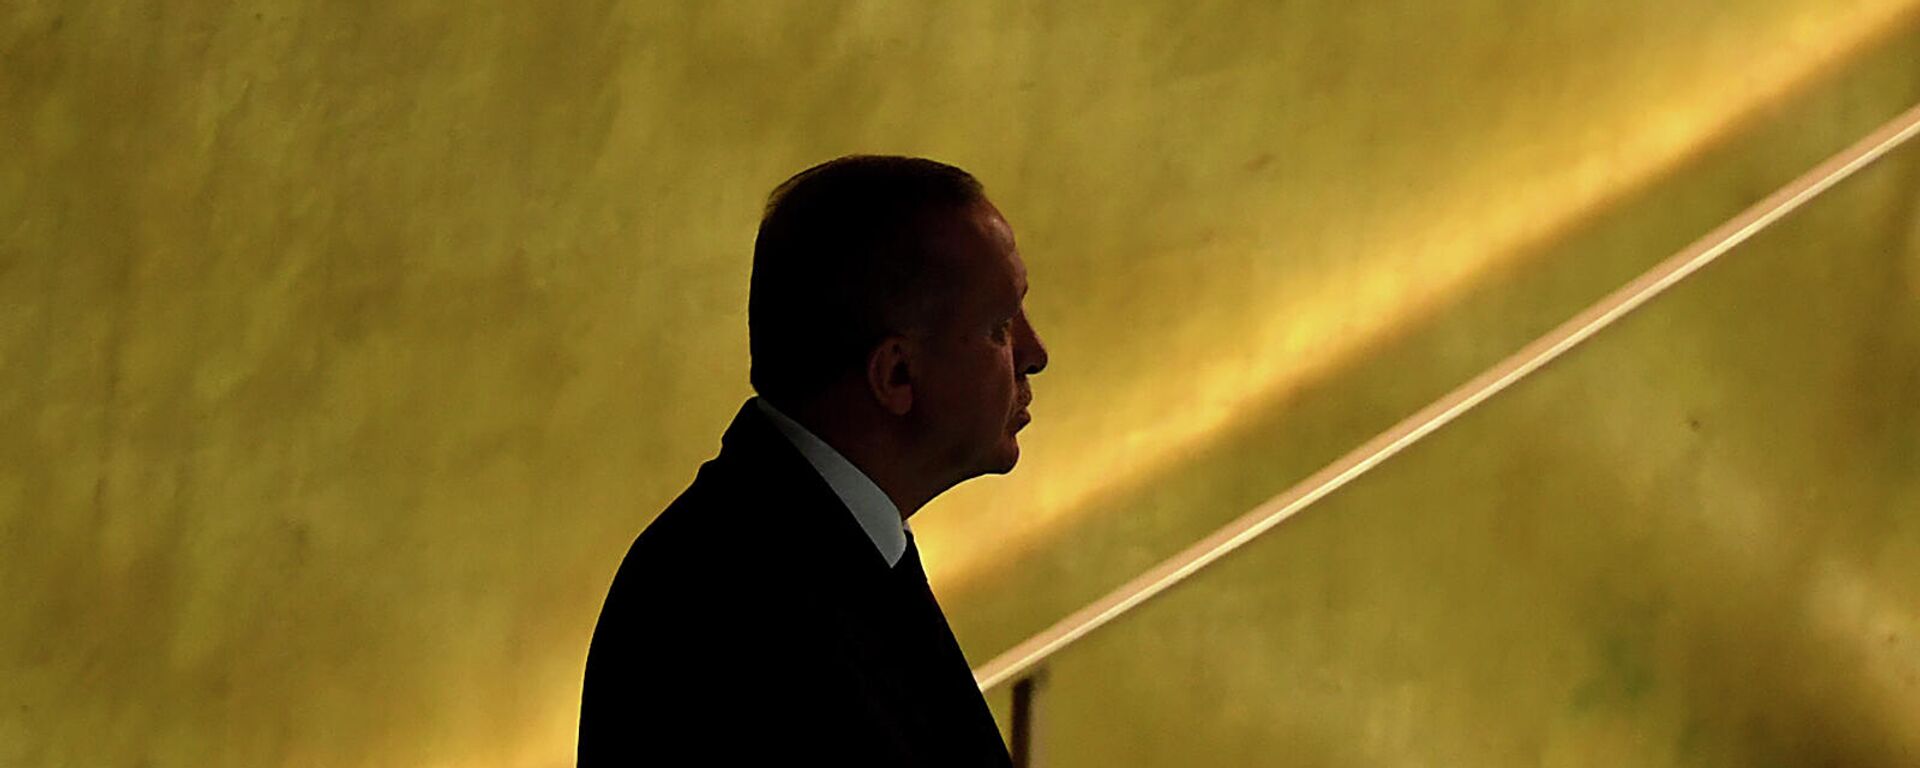 Президент Турции Реджеп Тайип Эрдоган перед выступлением на 76-й сессии Генеральной Ассамблеи ООН (21 сентября 2021). Нью-Йорк - Sputnik Армения, 1920, 26.09.2021